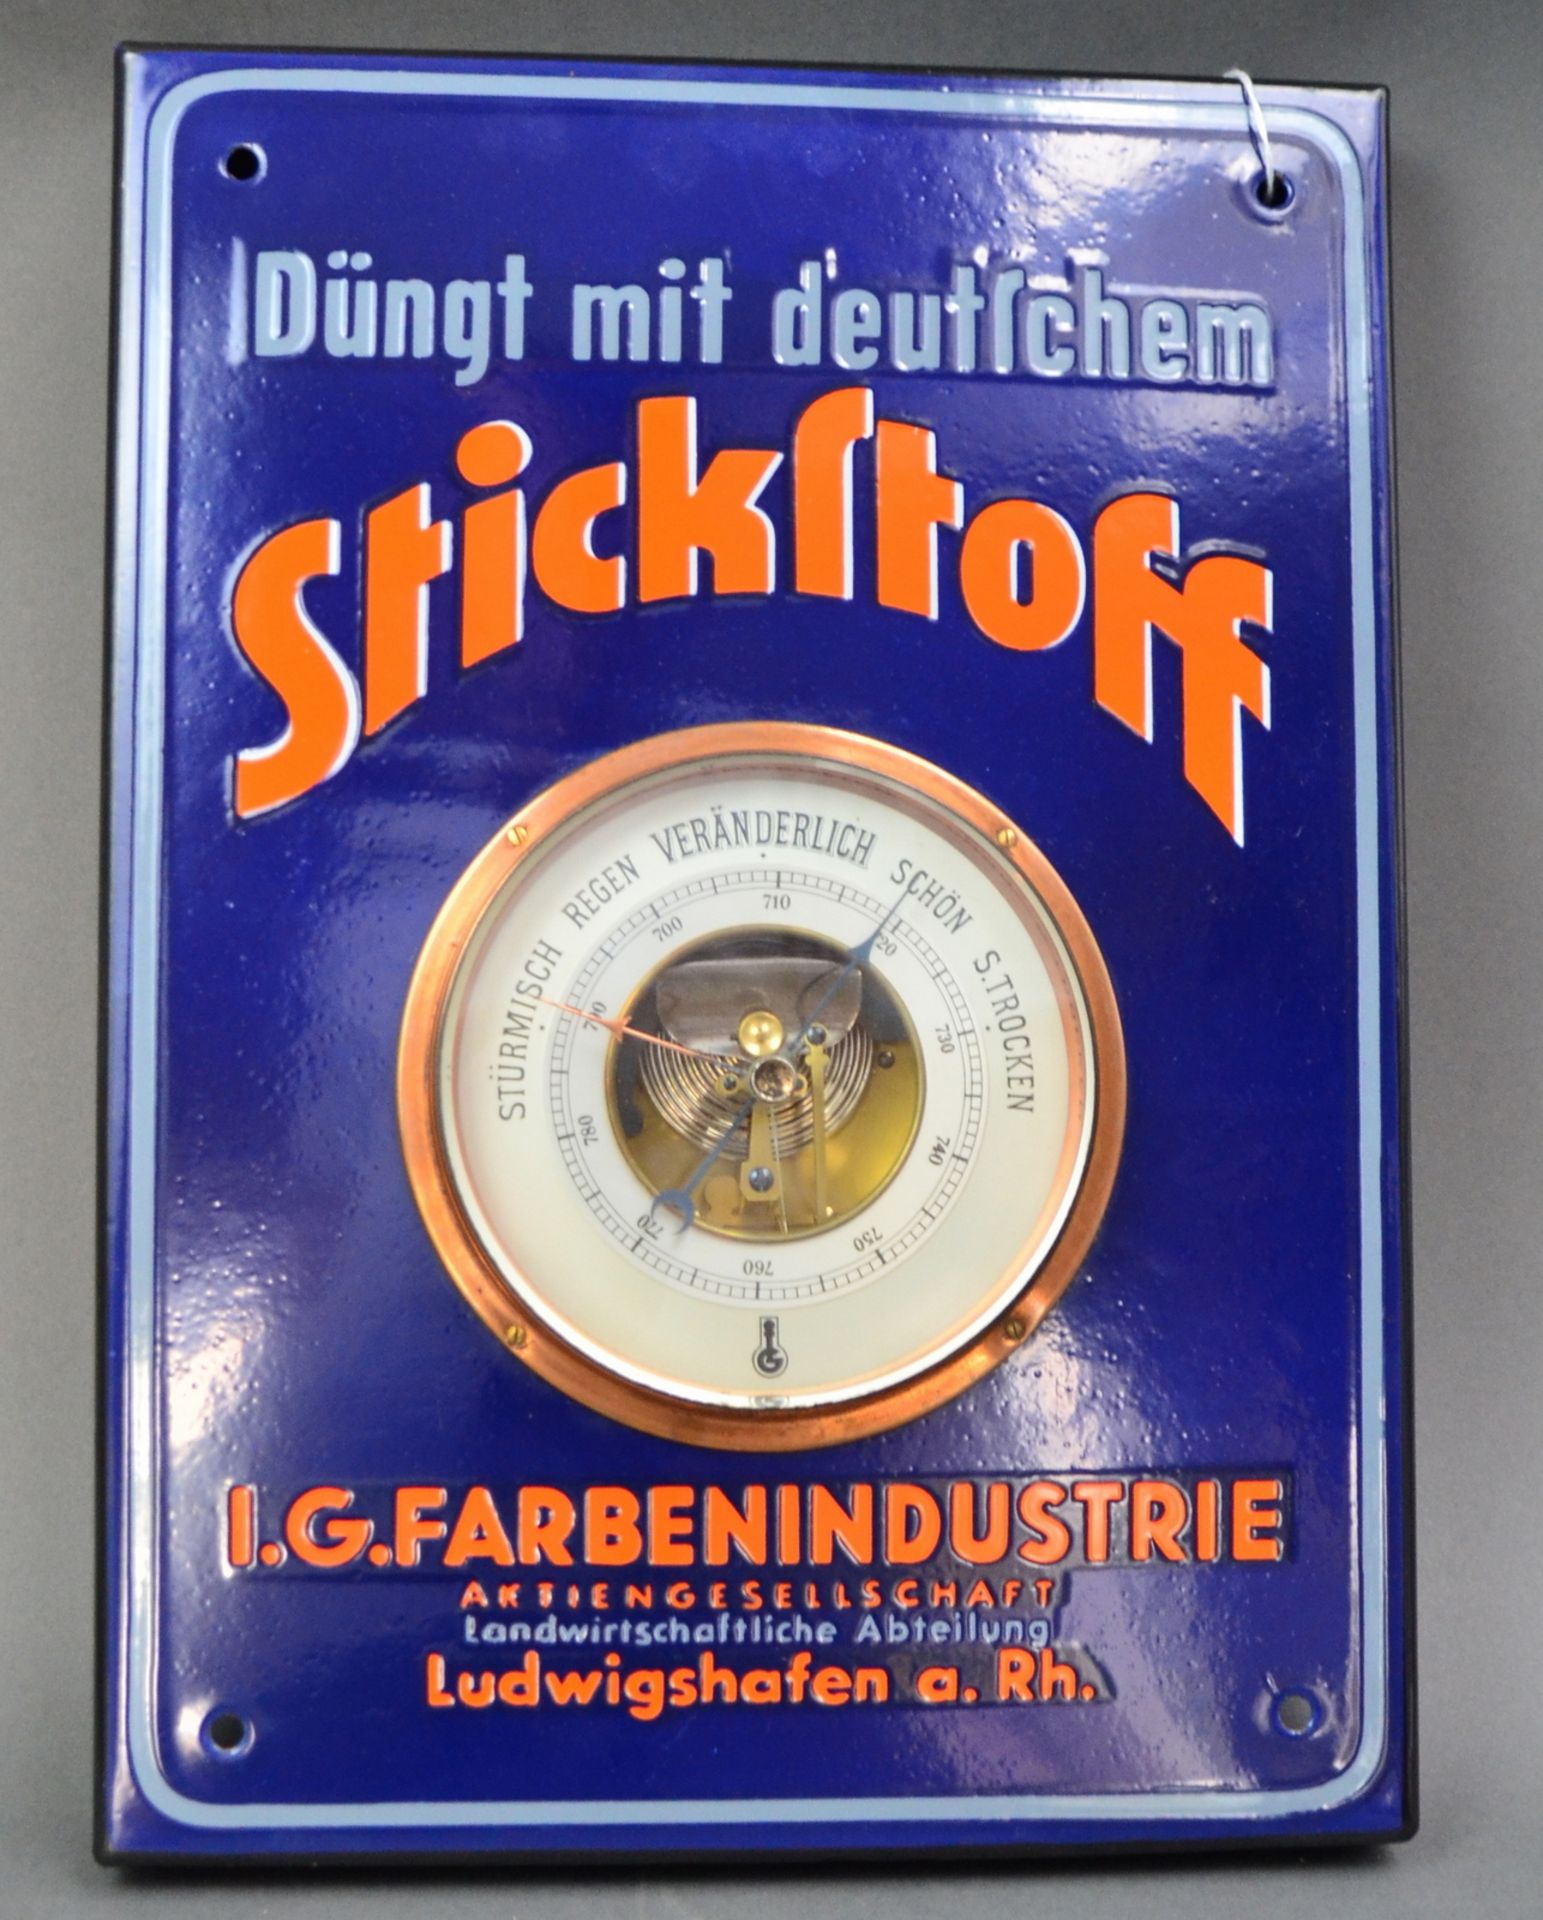 Emaille-Barometer I.G. Farbenindustrie Ludwigshafen "Düngt mit deutschem Stickstoff"